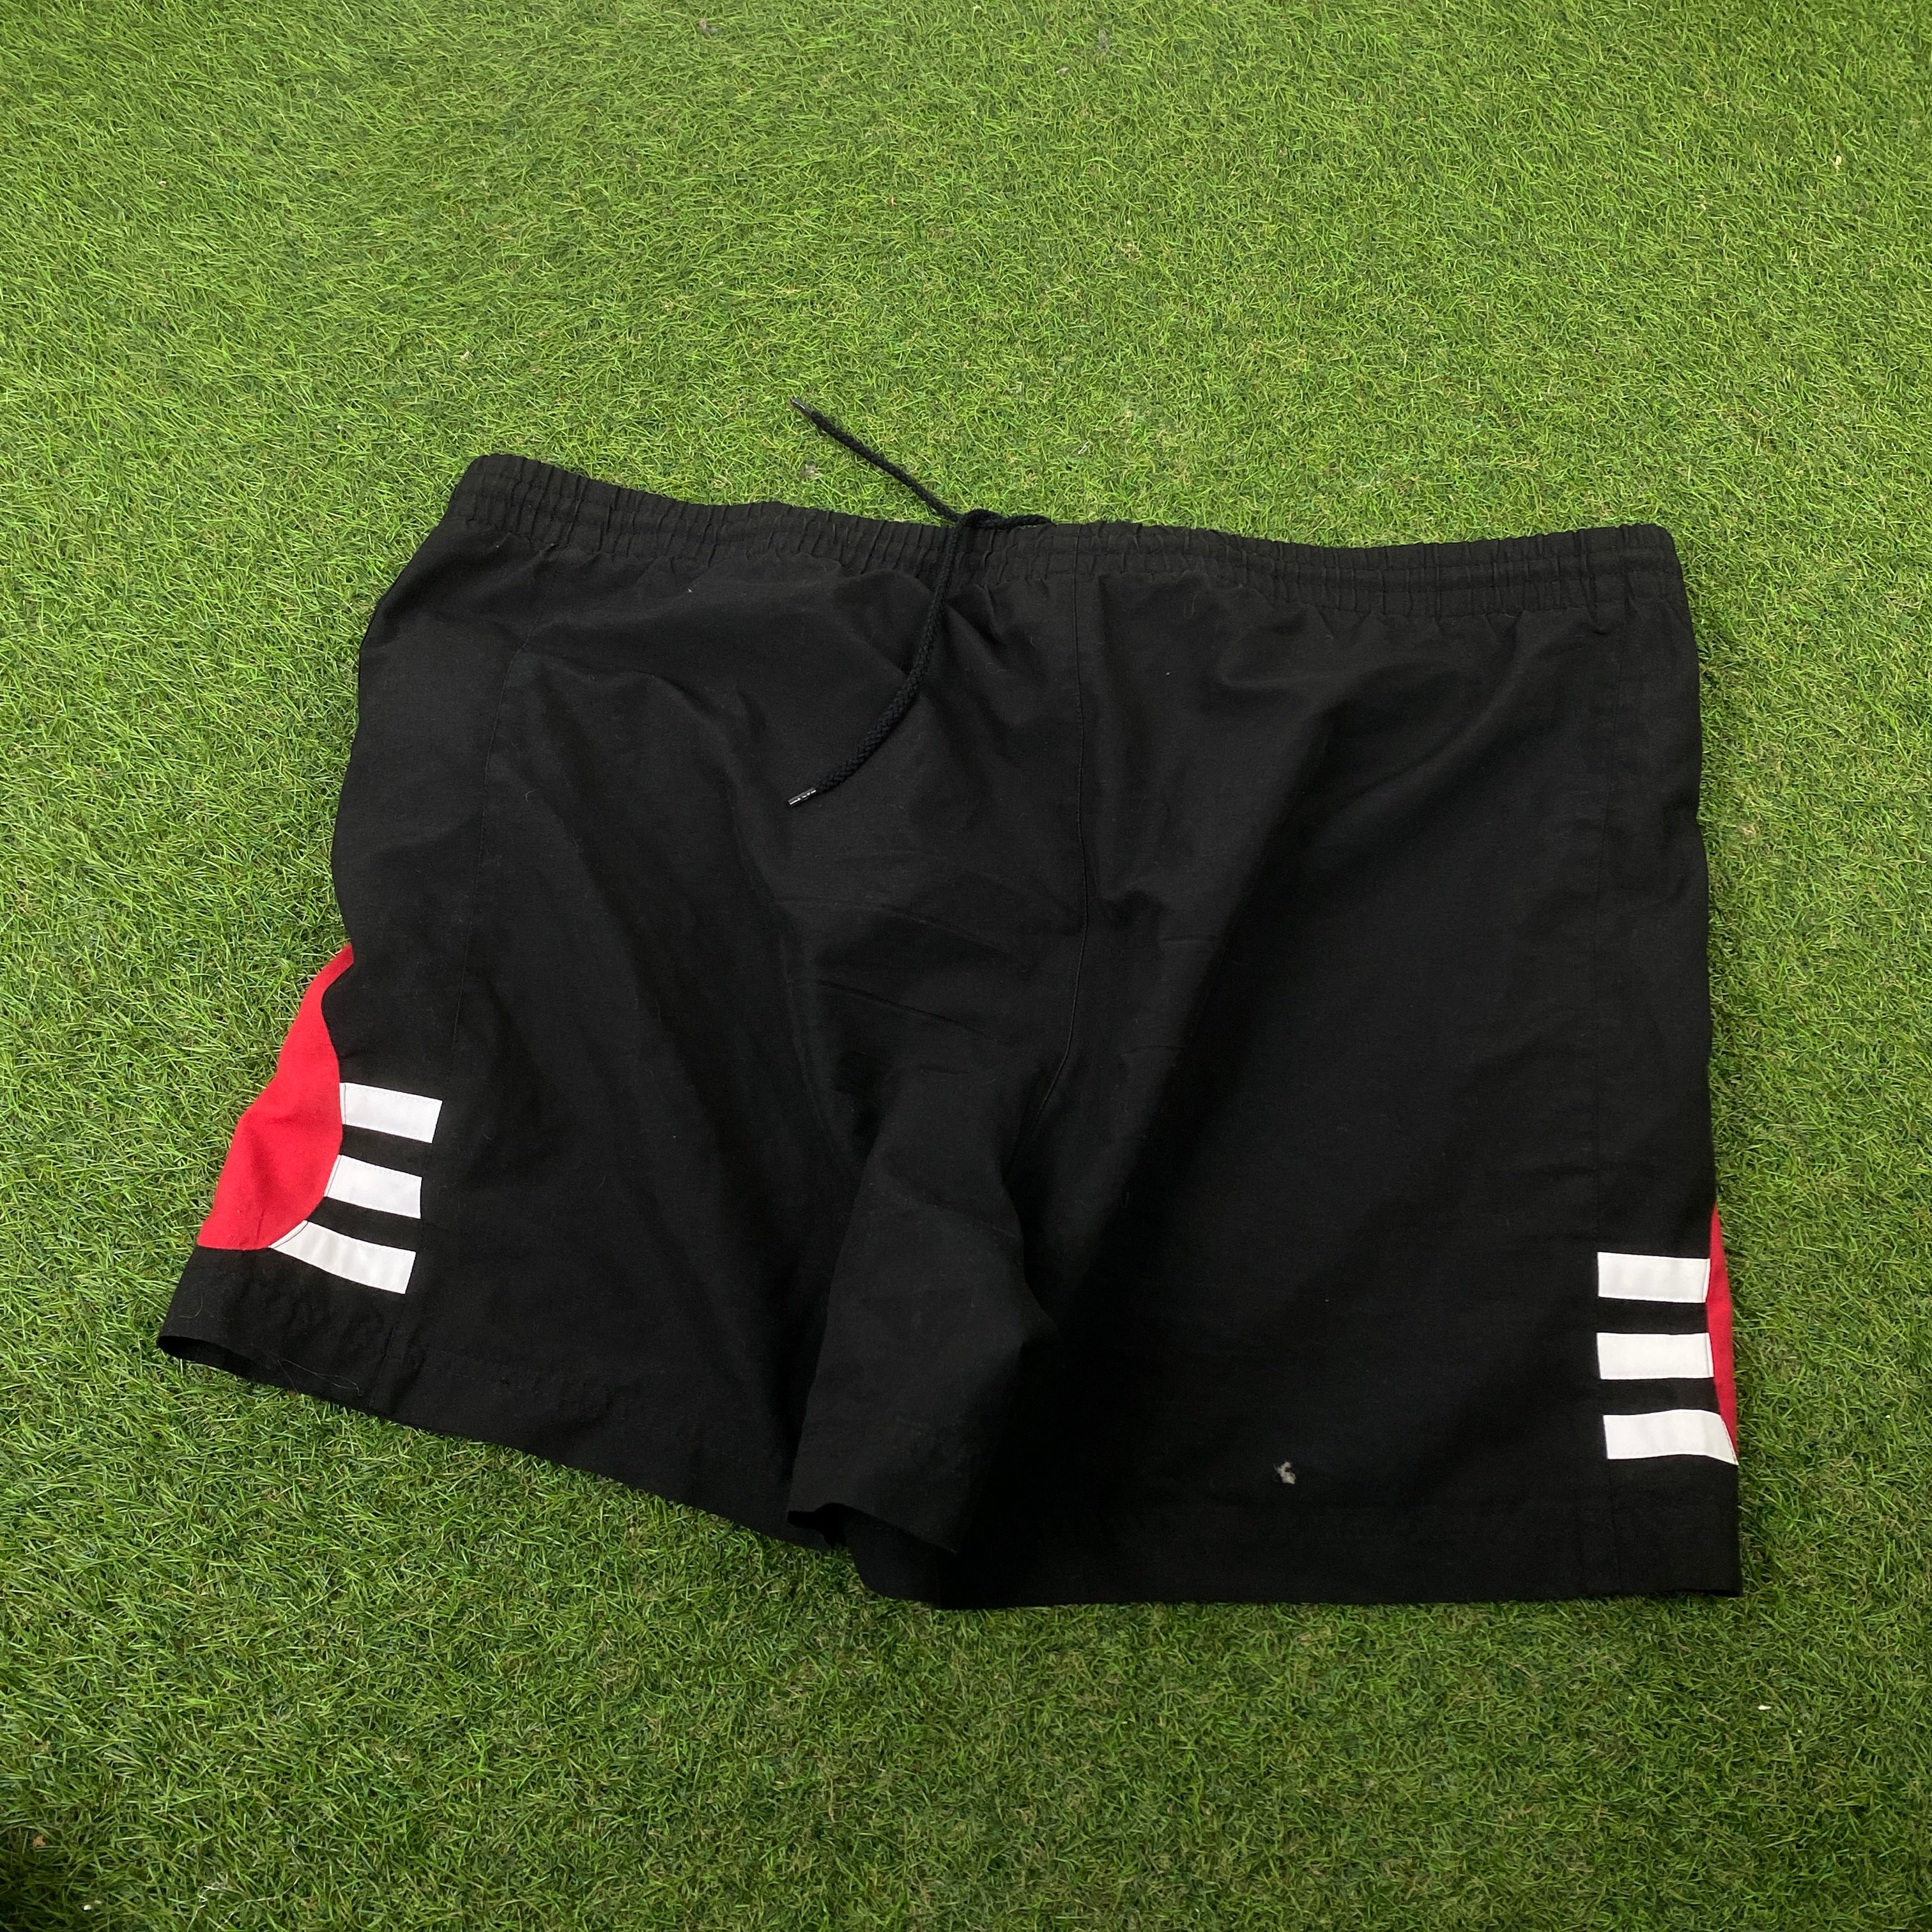 90s Adidas Gym Shorts Black Large